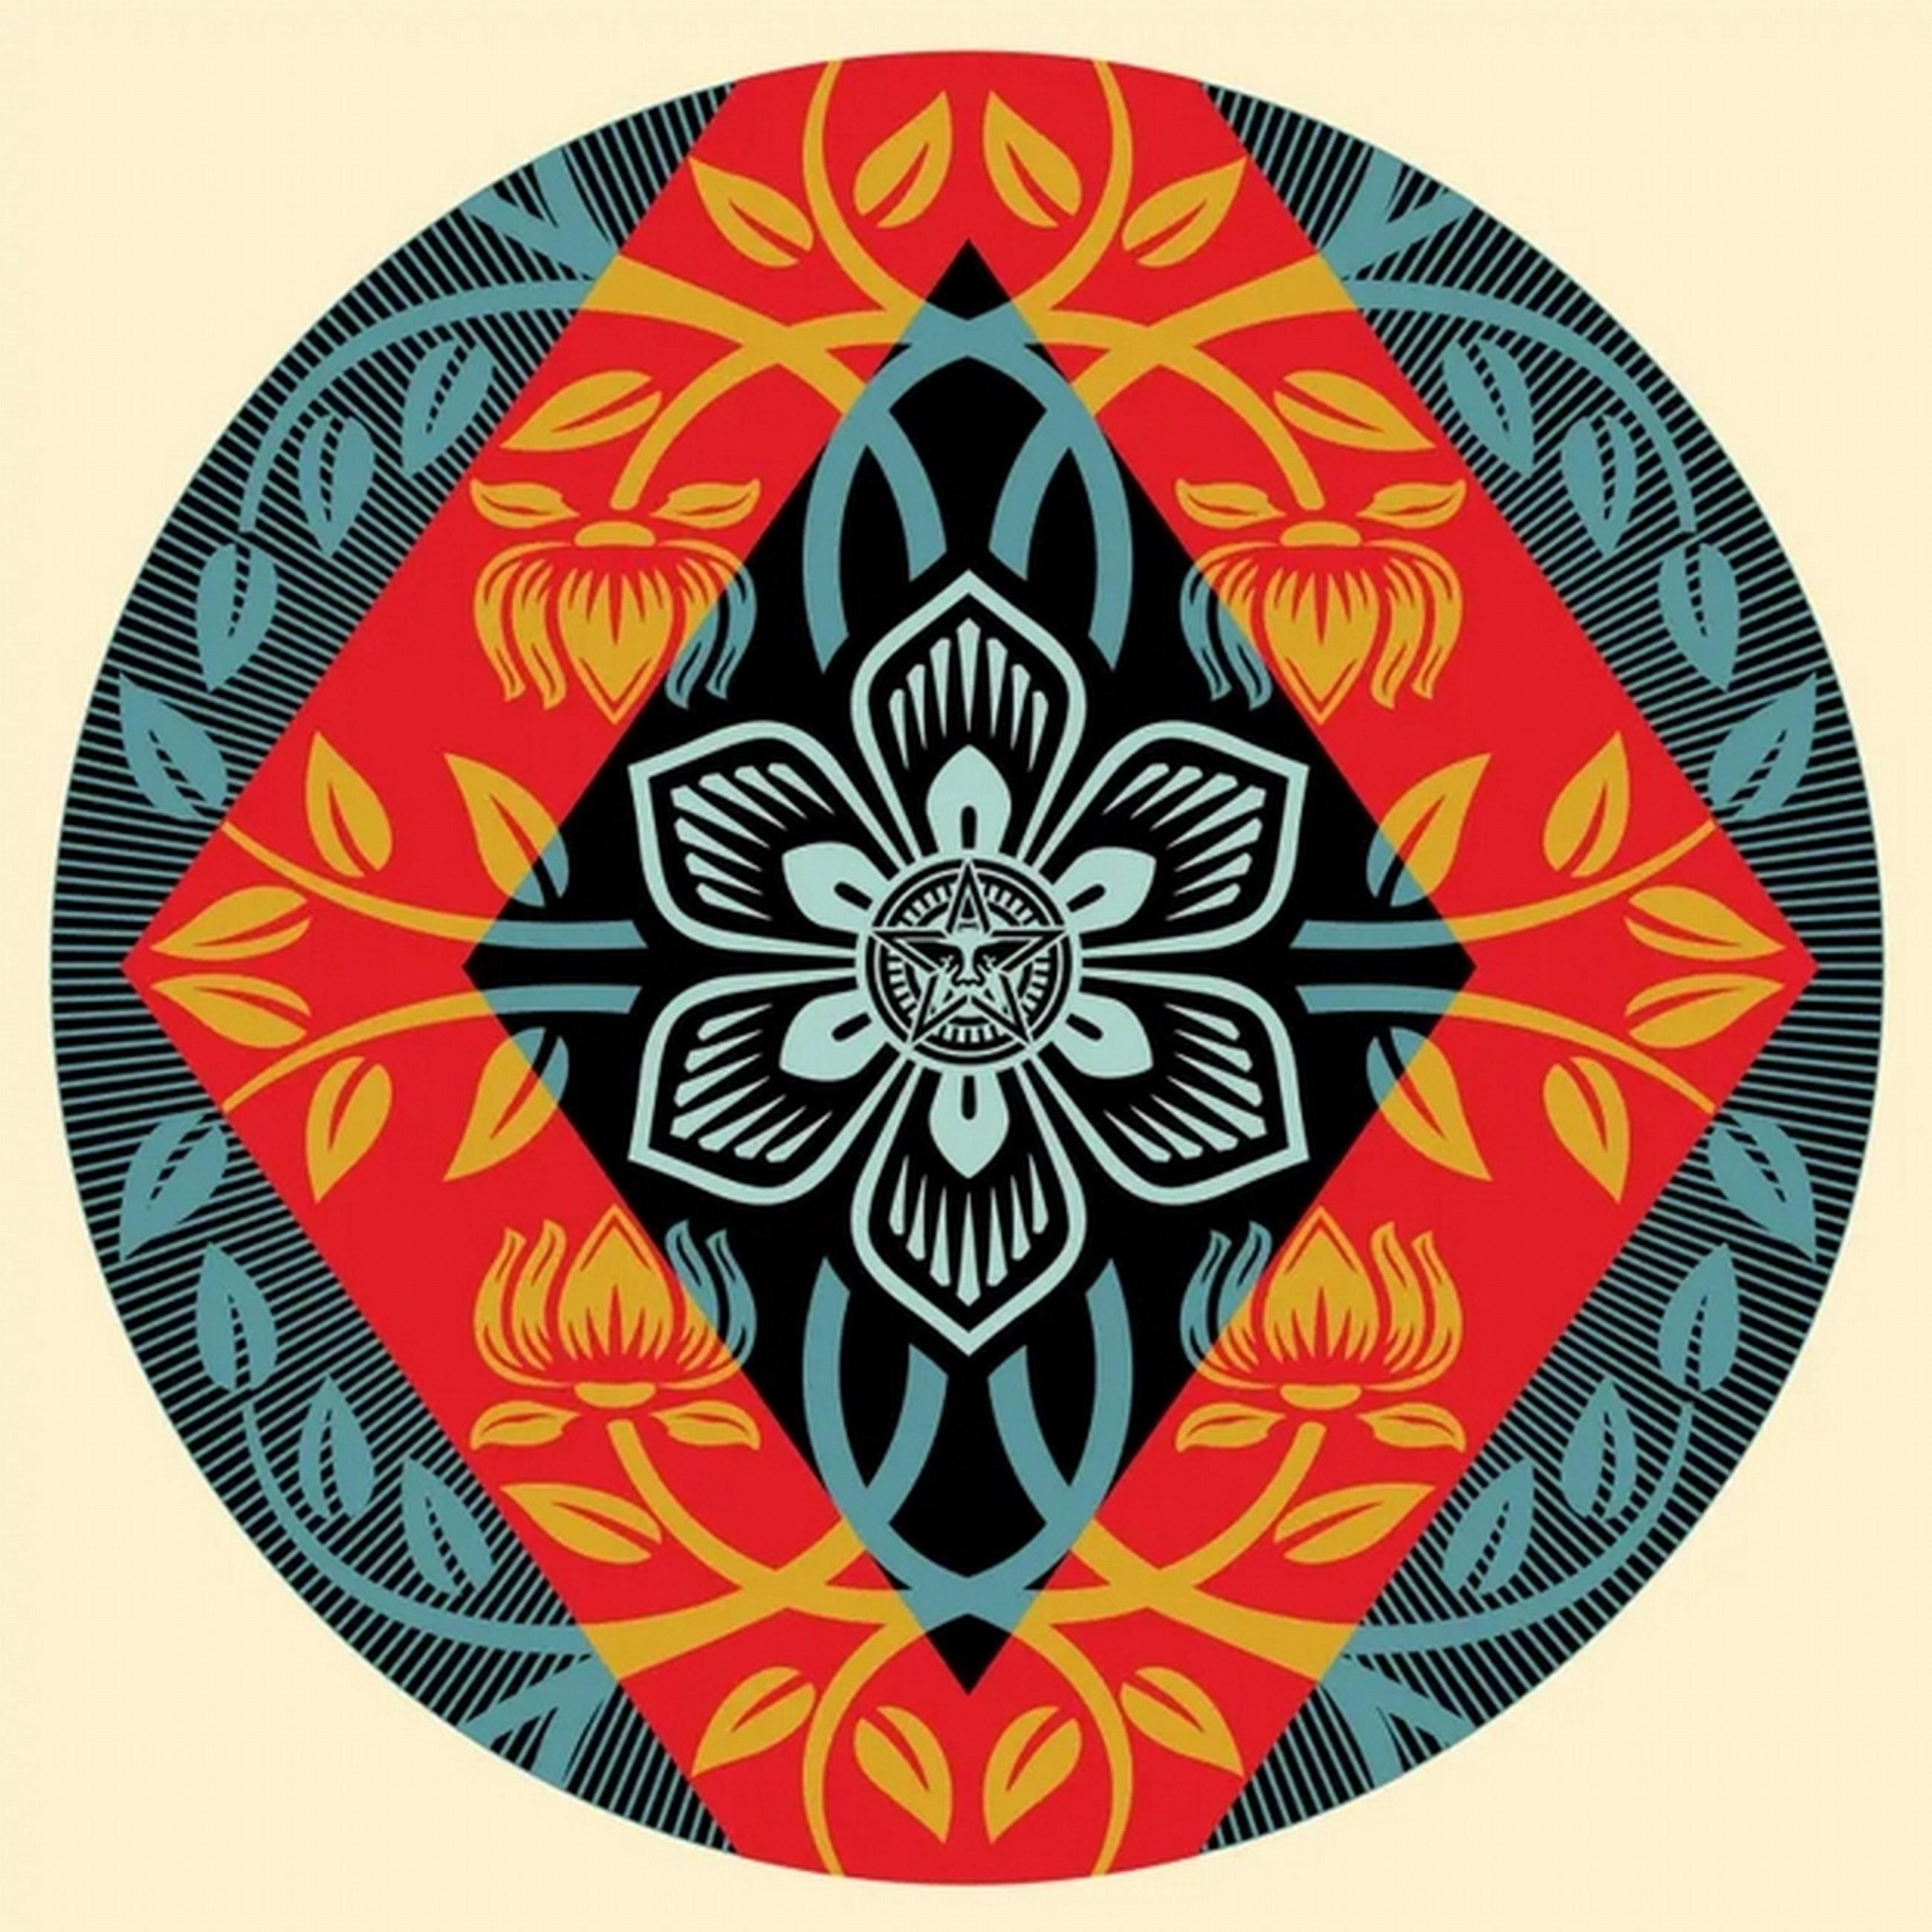 Diamant-Blume, rund (Ikonisch, Positive Wachstum, Harmonie, Ausgewogenheit) – Print von Shepard Fairey